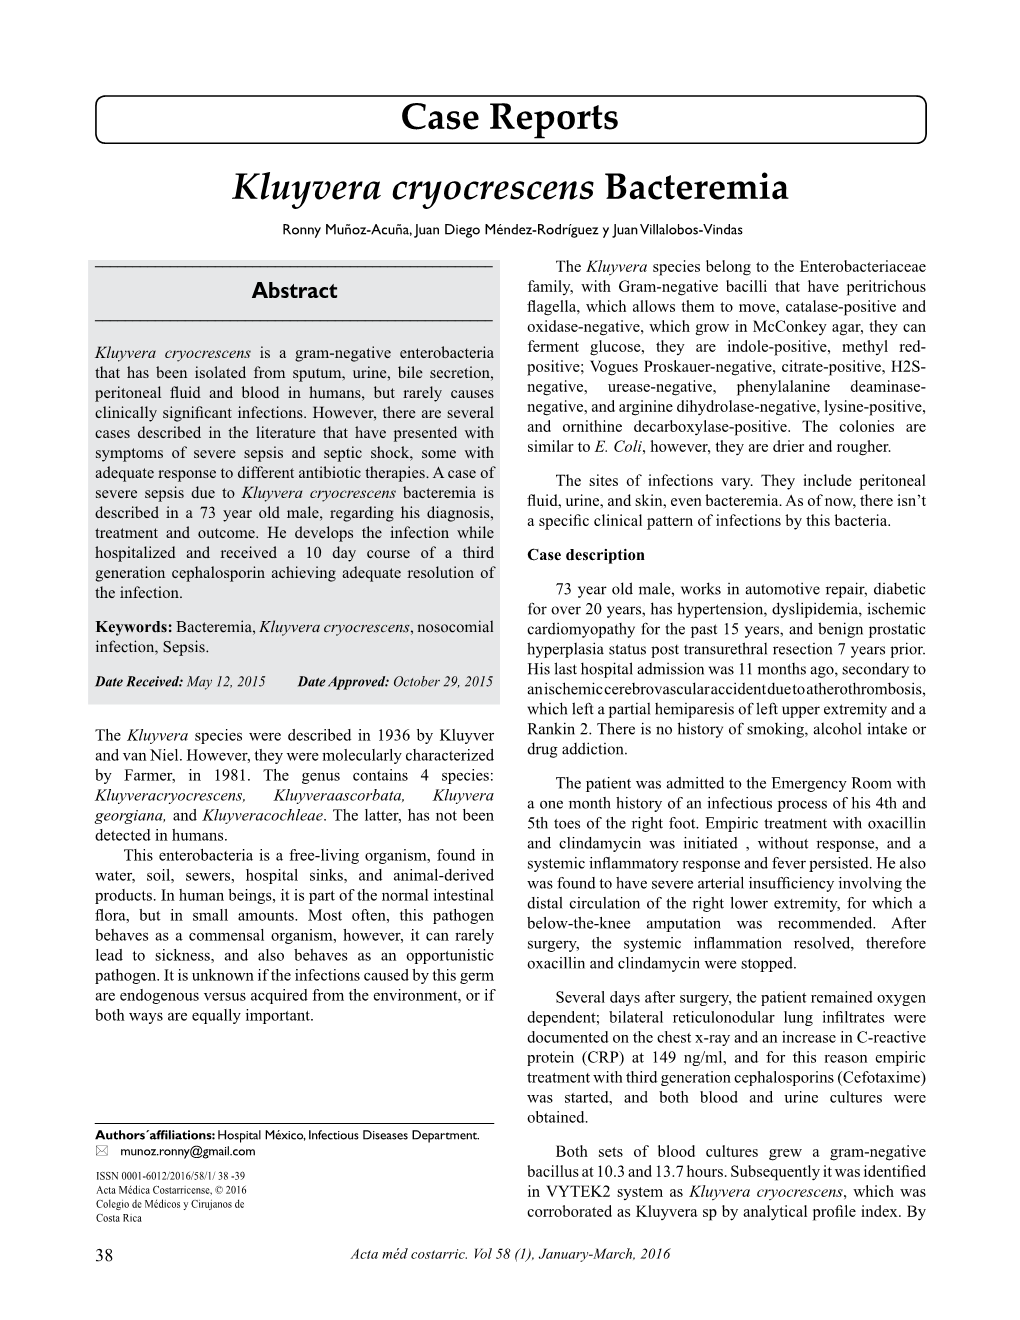 Kluyvera Cryocrescens Bacteremia Case Reports